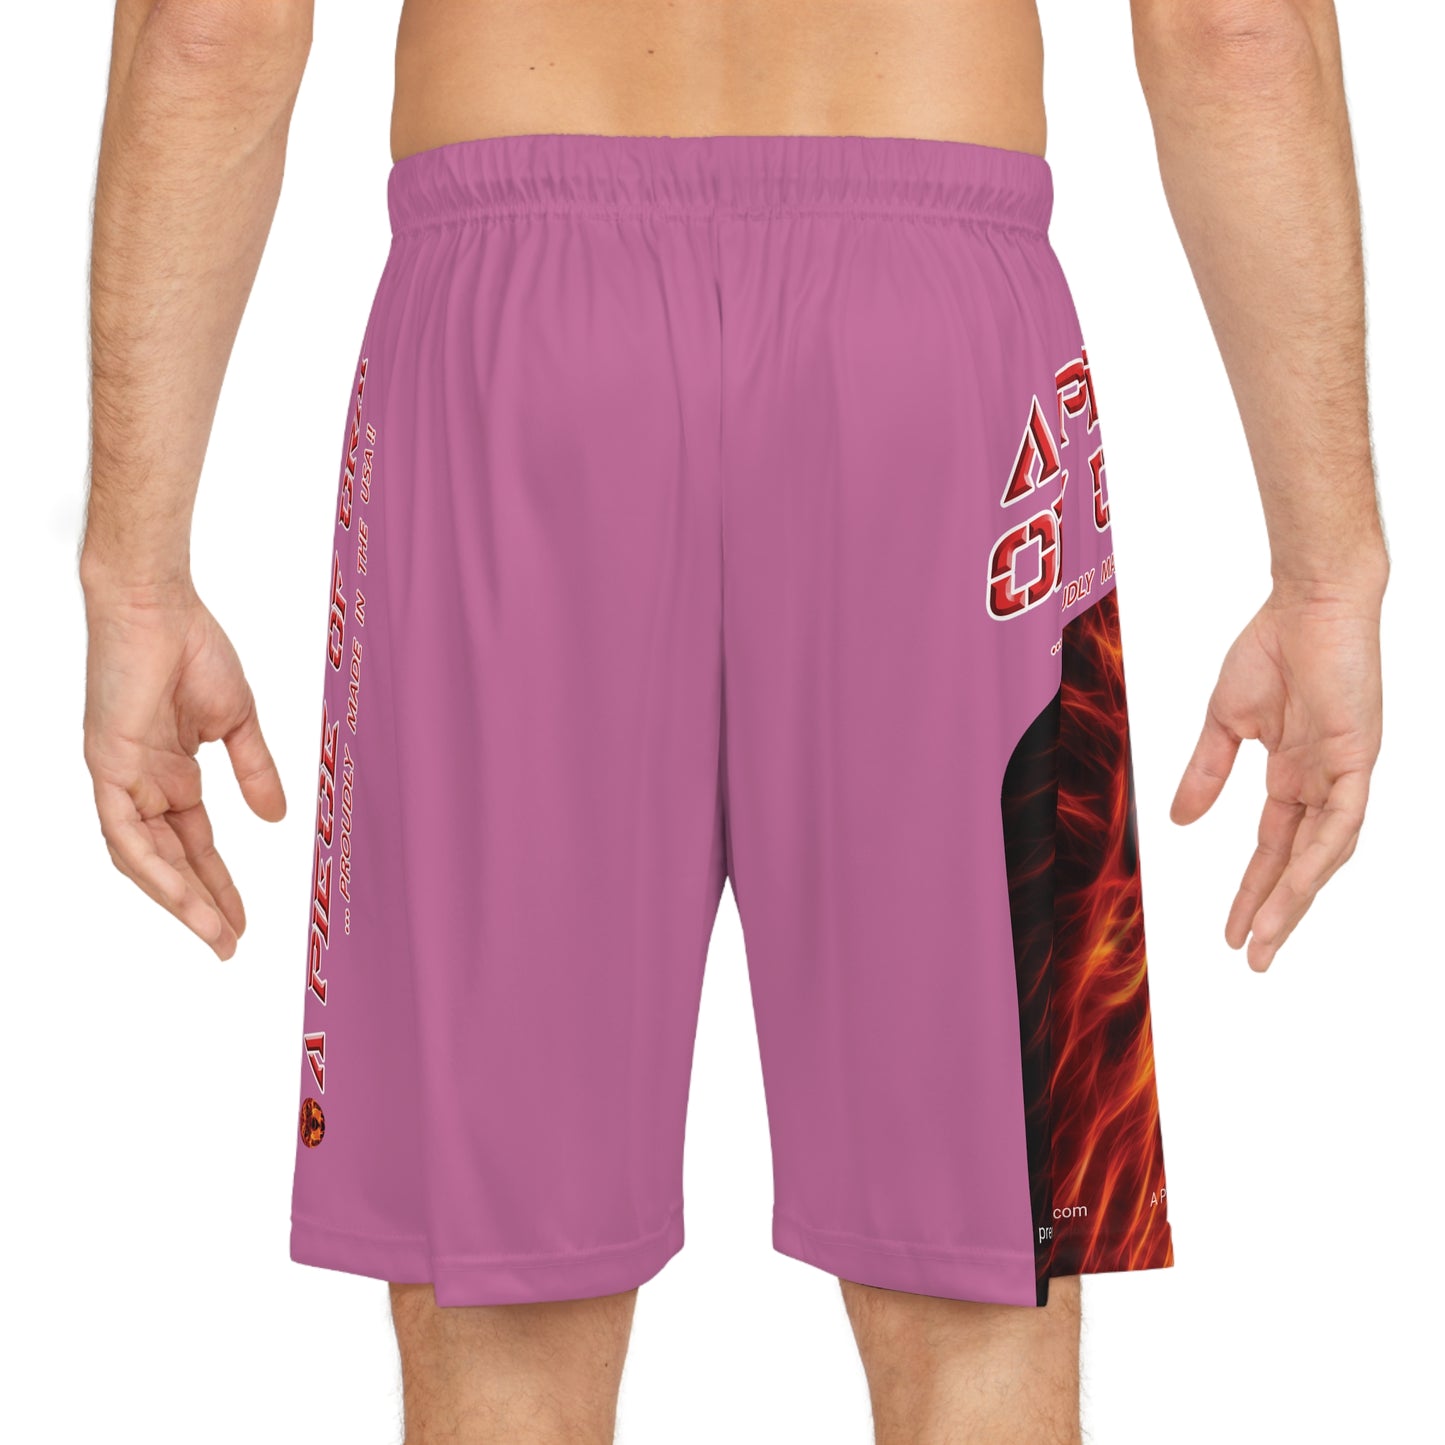 A Piece Of Crap BougieBooty Baller Shorts - Light Pink